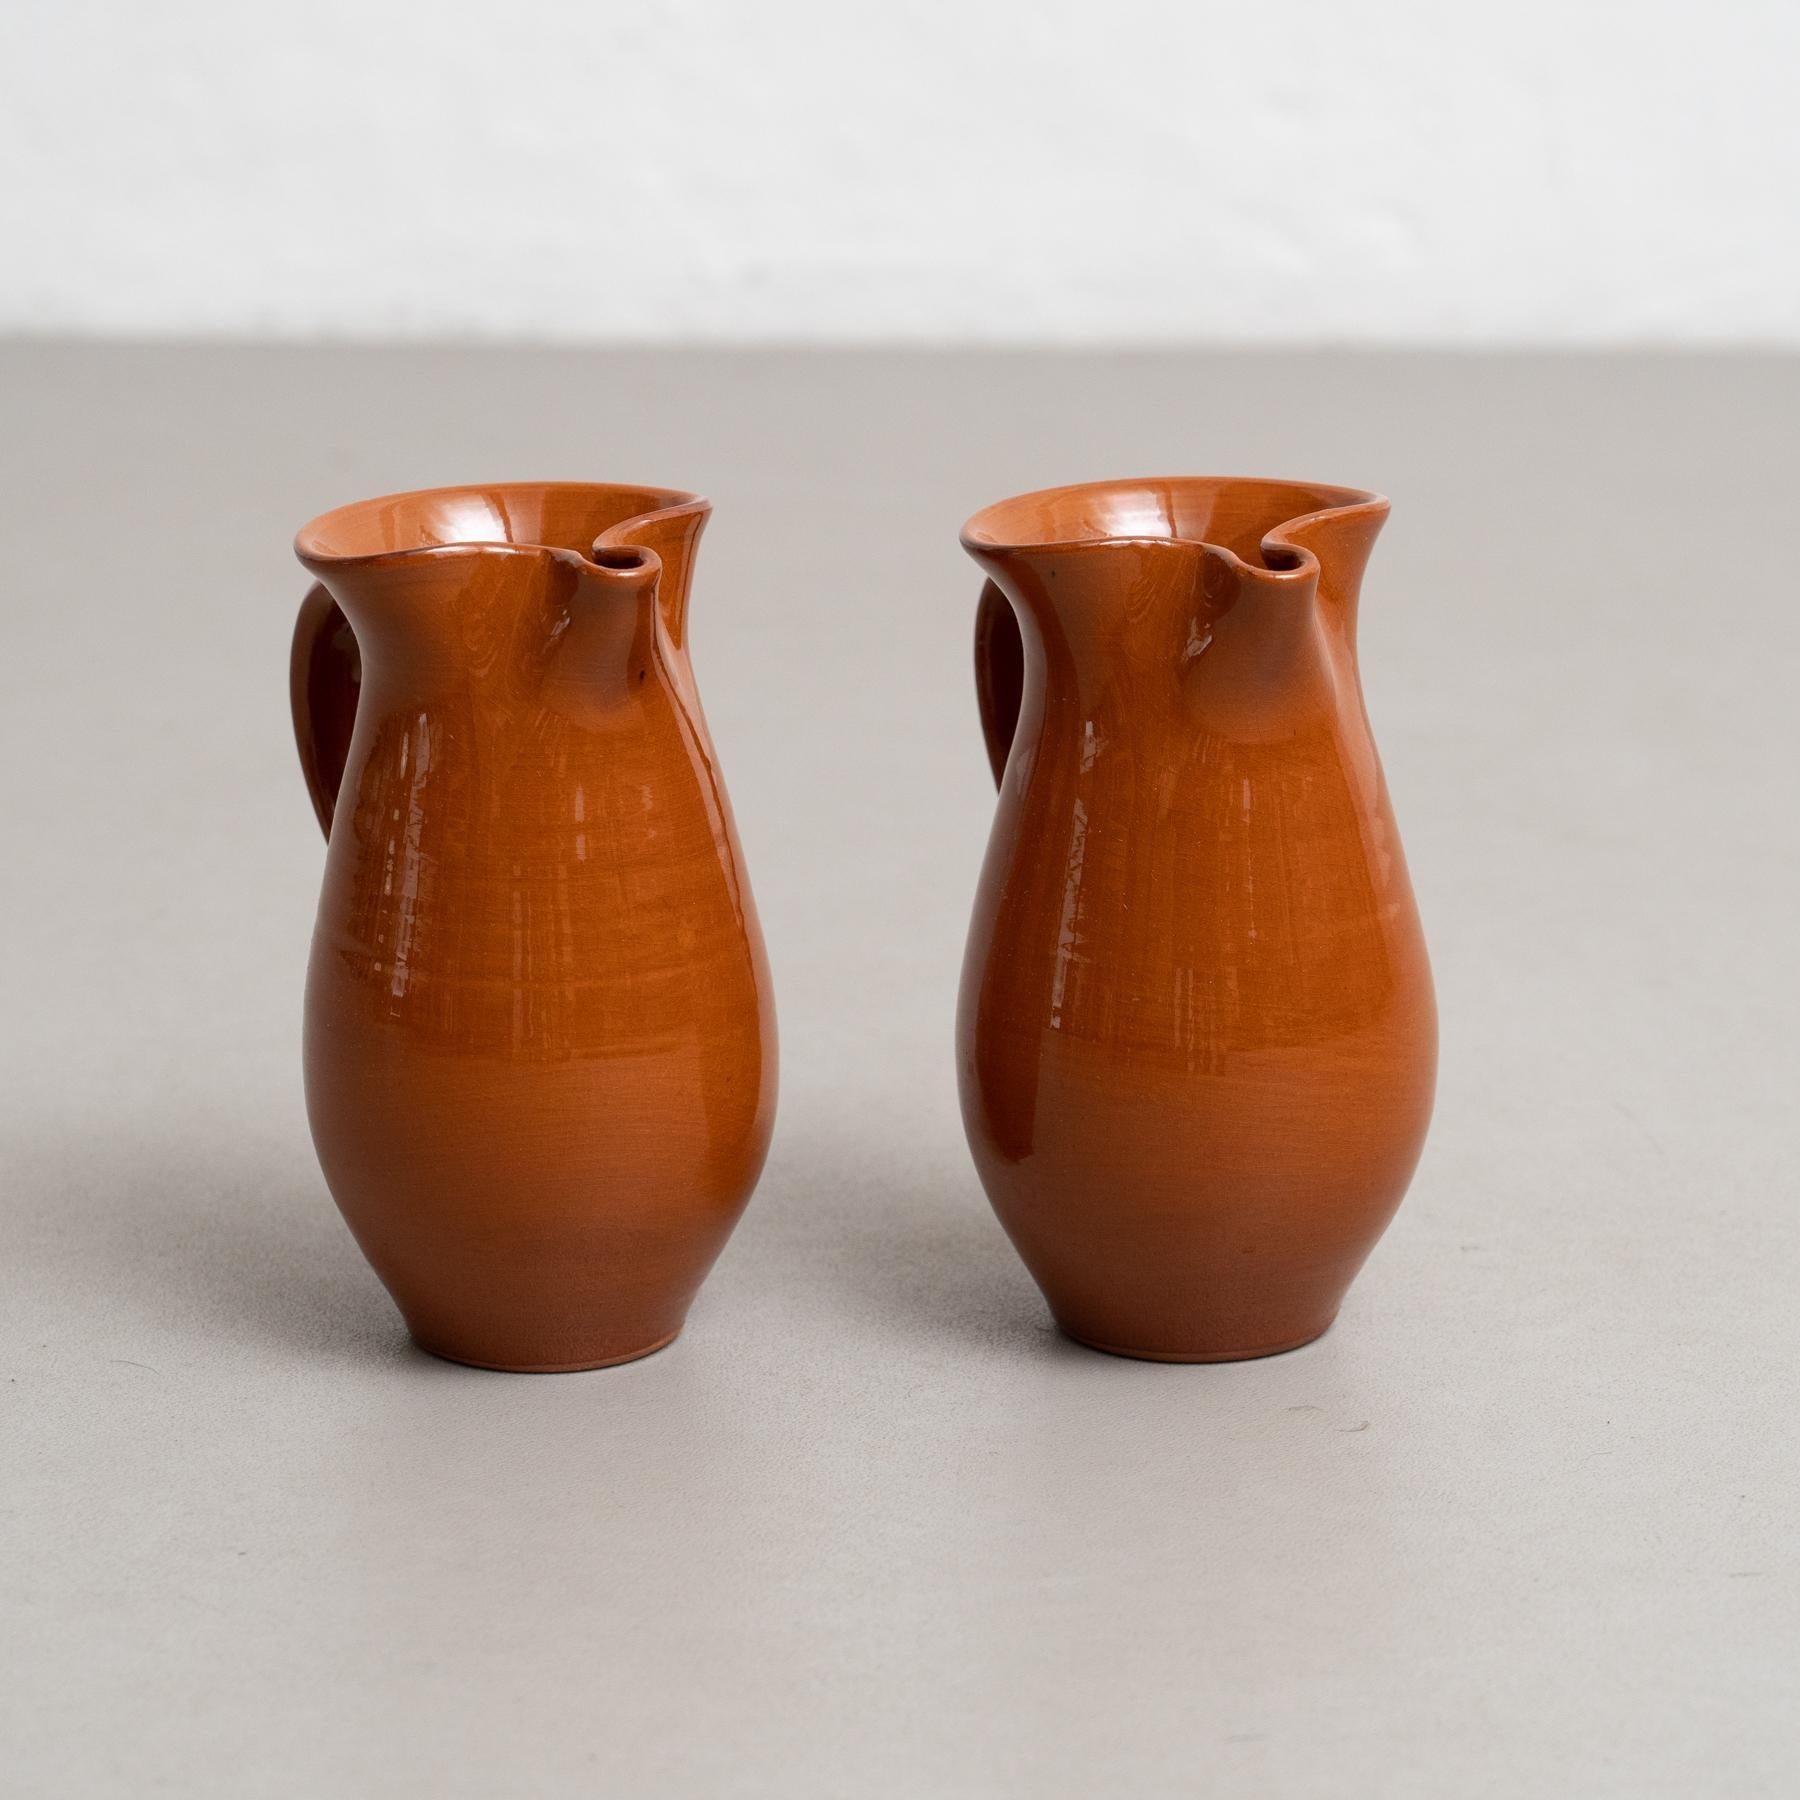 Ensemble de deux vases traditionnels en céramique espagnole du milieu du 20e siècle.

Fabriqué en Espagne.

En état d'origine avec une usure mineure conforme à l'âge et à l'utilisation, préservant une belle patine.

Matériaux :